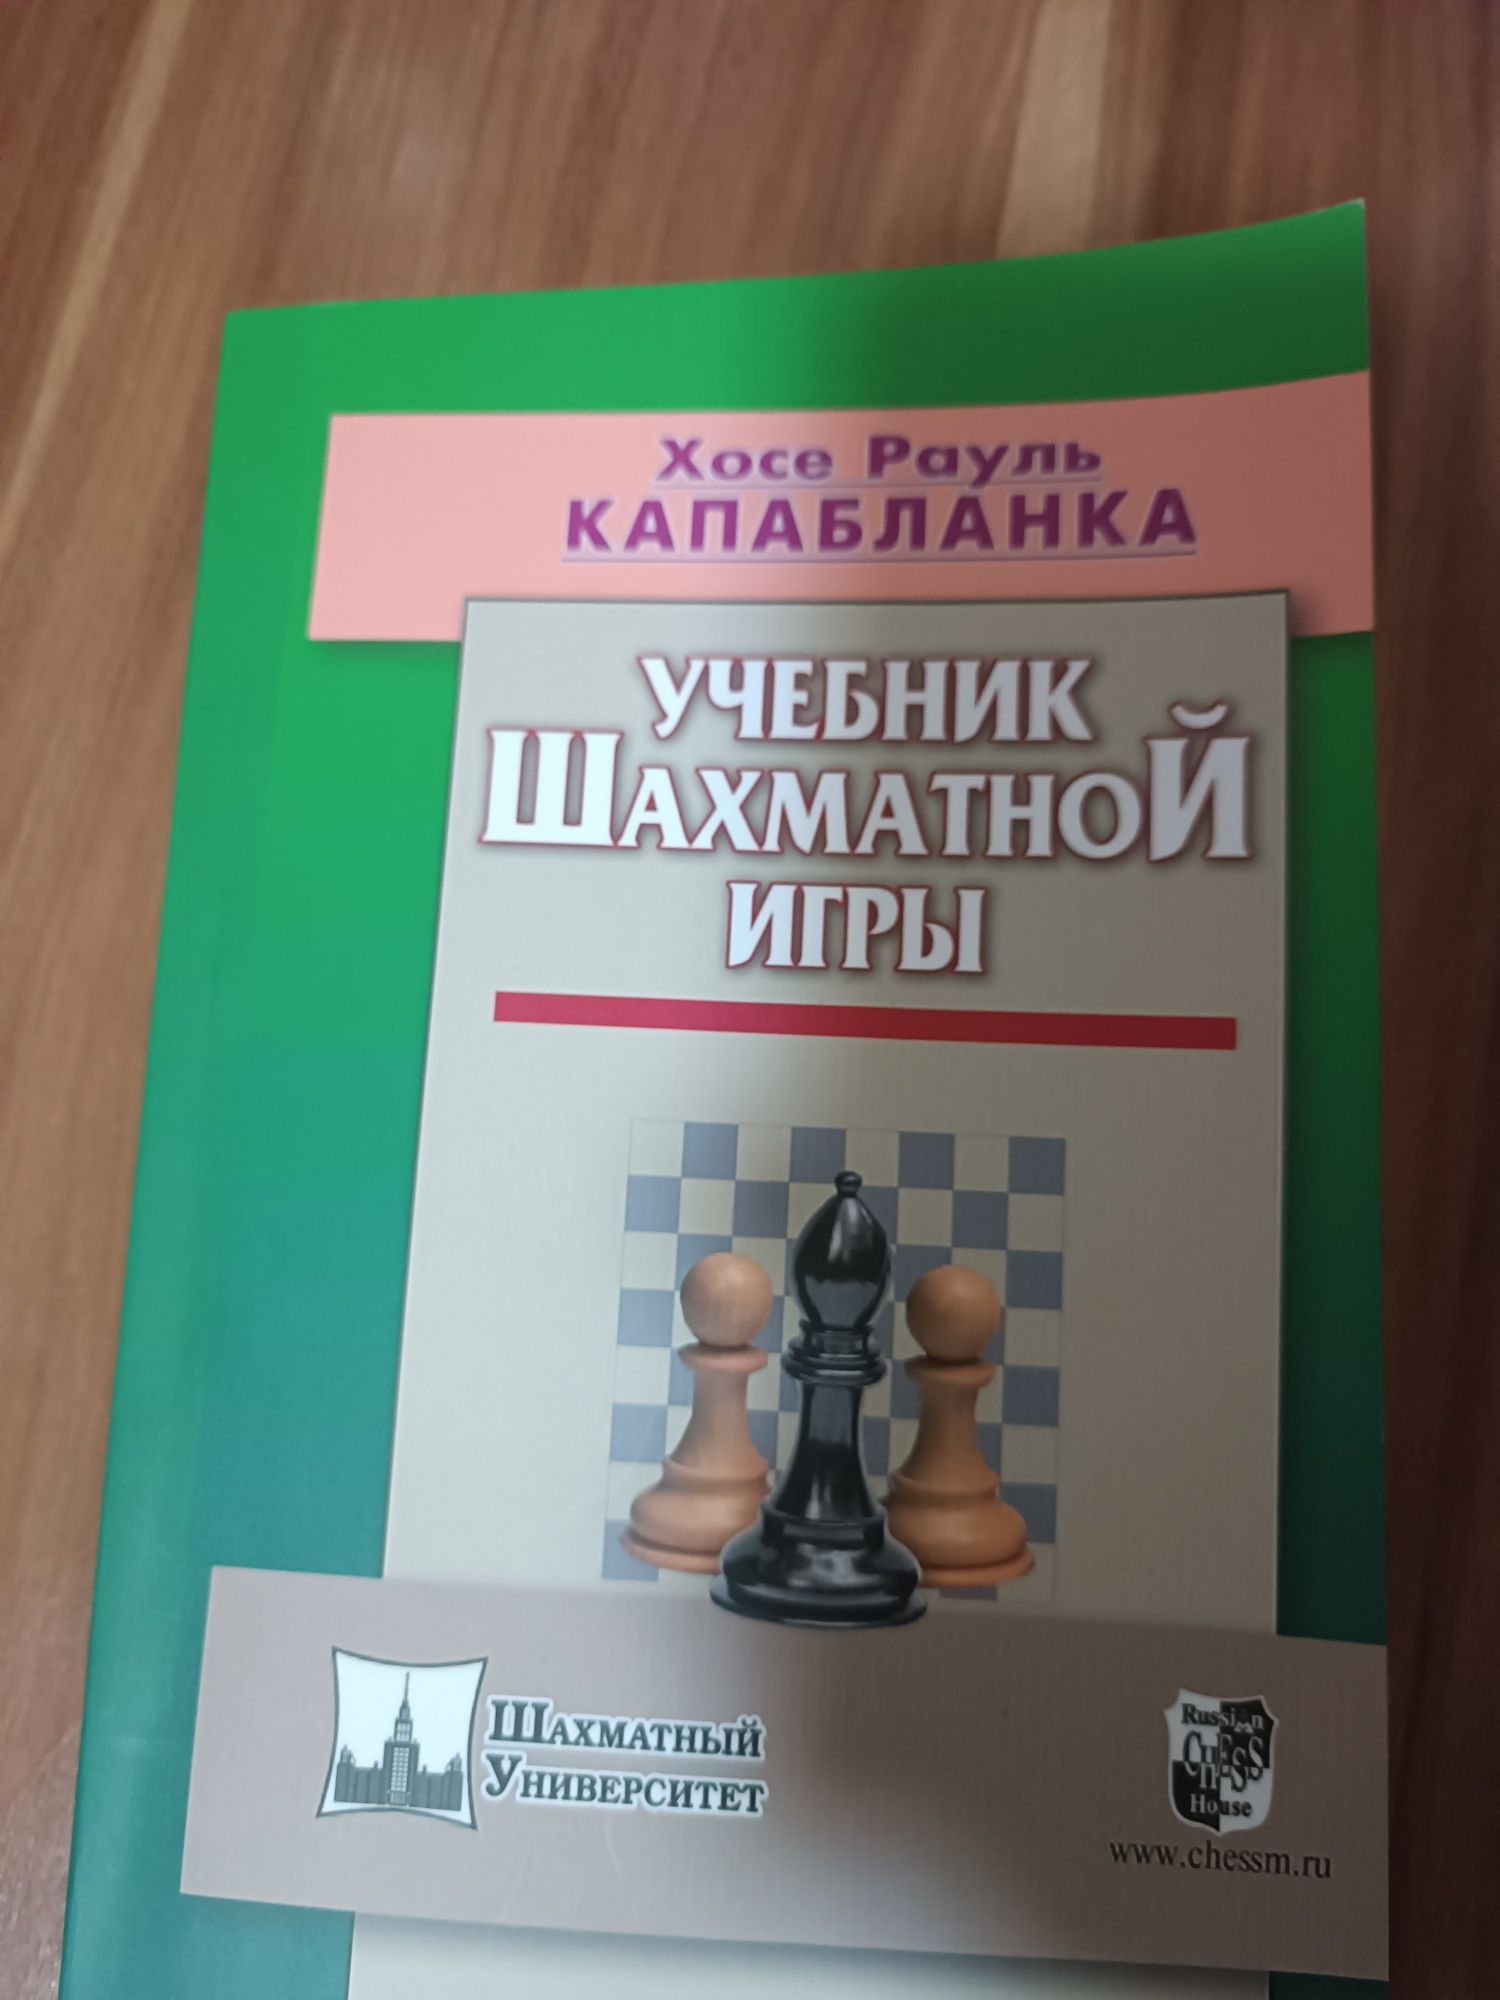 Книга по шахматам. Топовые обучающие. Книга чемпионов мира!